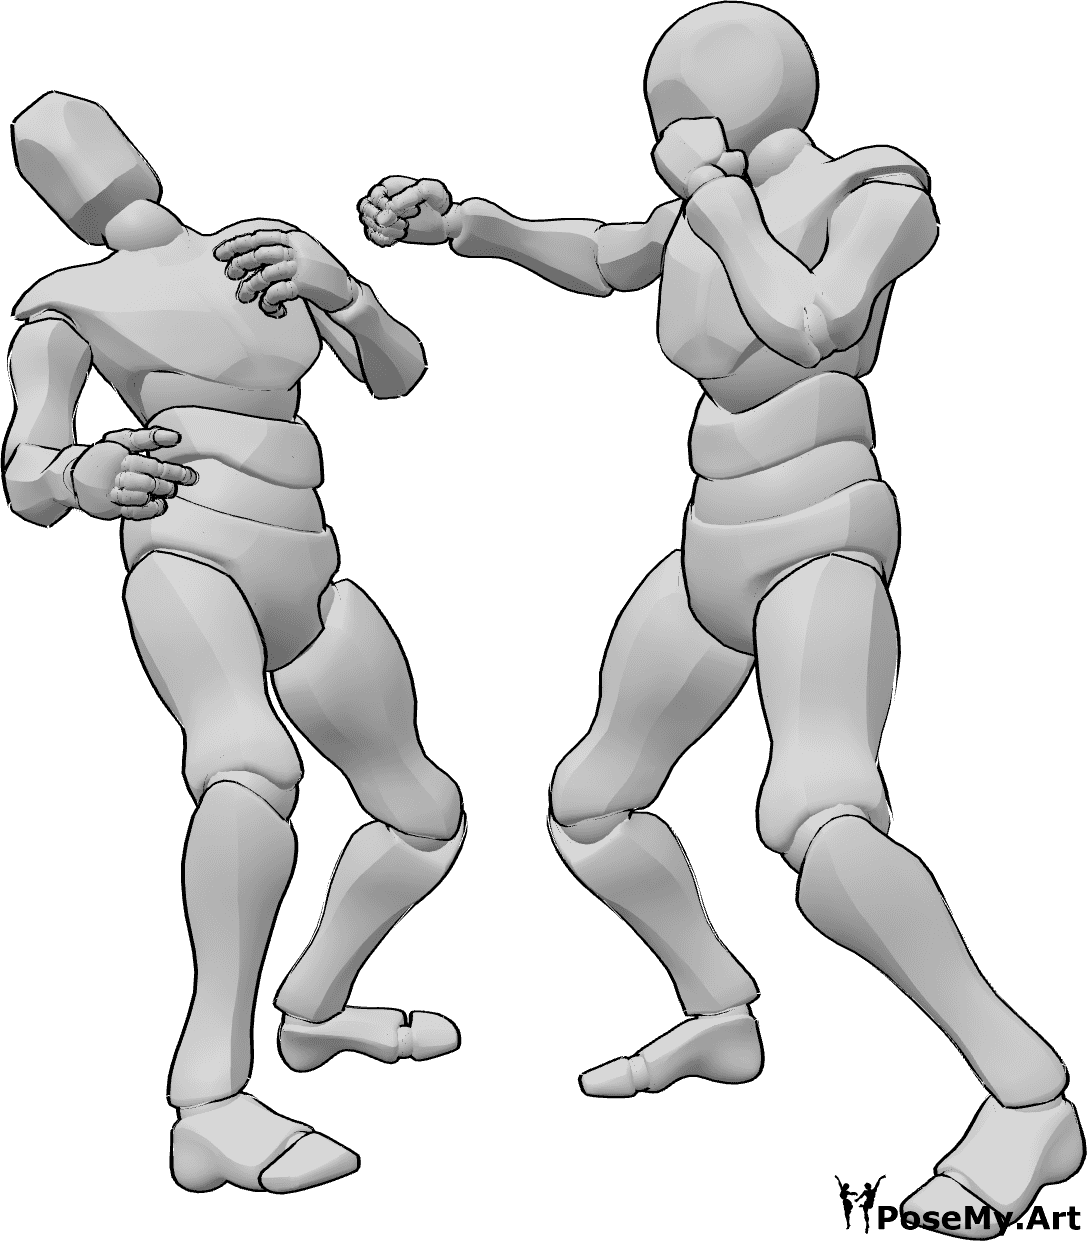 Posen-Referenz- Box-Knocking-Out-Pose - Zwei Männer boxen, einer von ihnen schlägt seinen Gegner mit einem rechten Haken k.o.